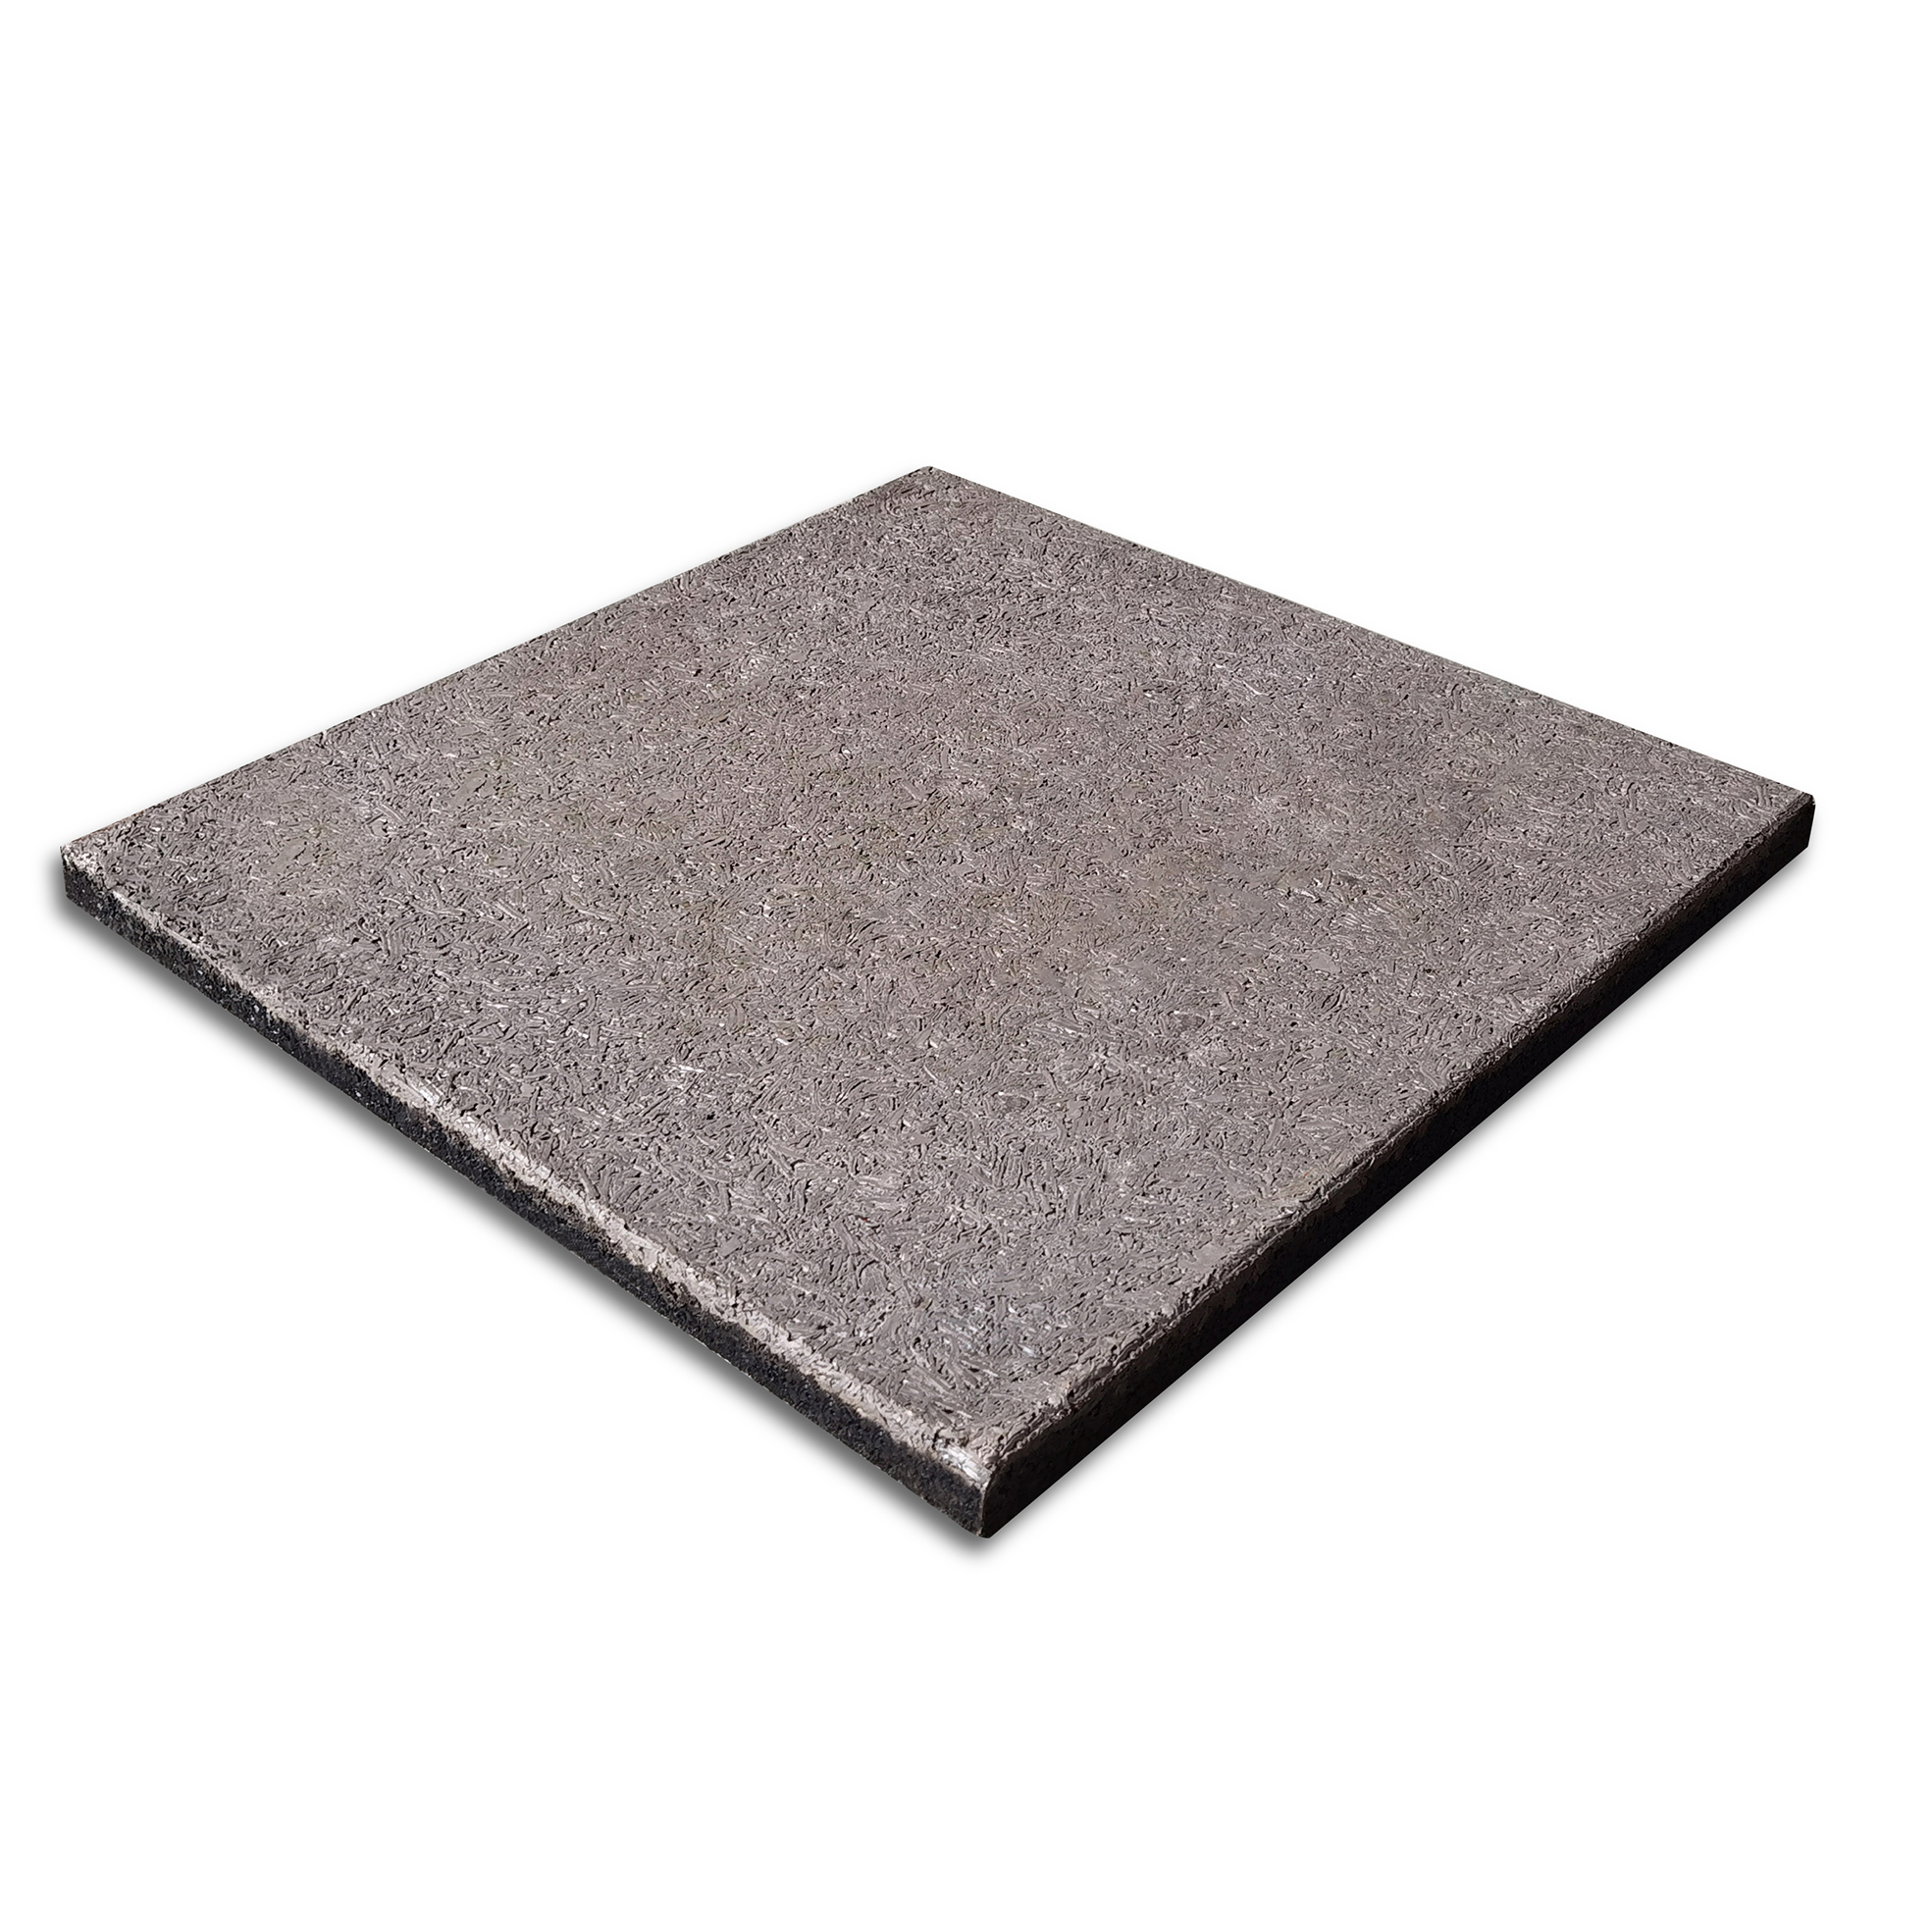 Factory High Quality Ballistic Rubber Tiles Mats